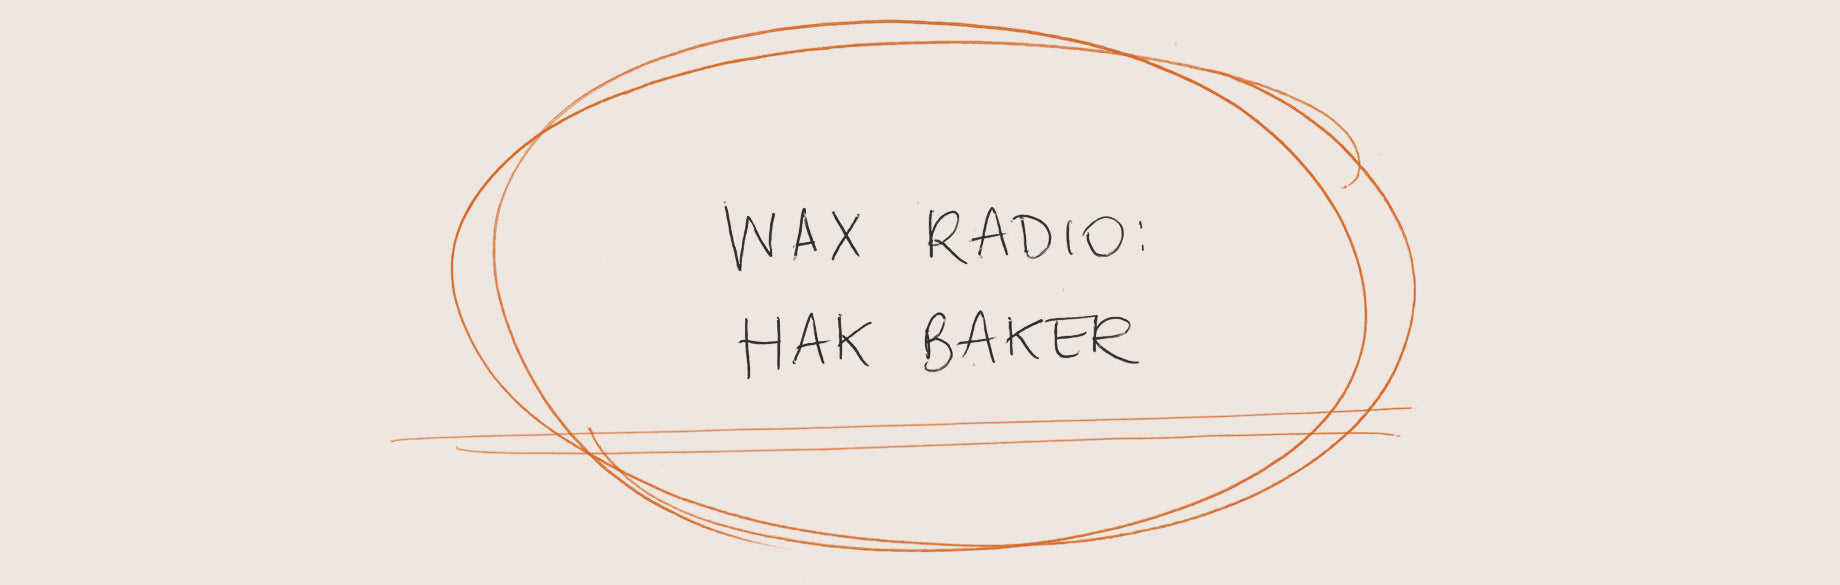 Wax Radio: Hak Baker